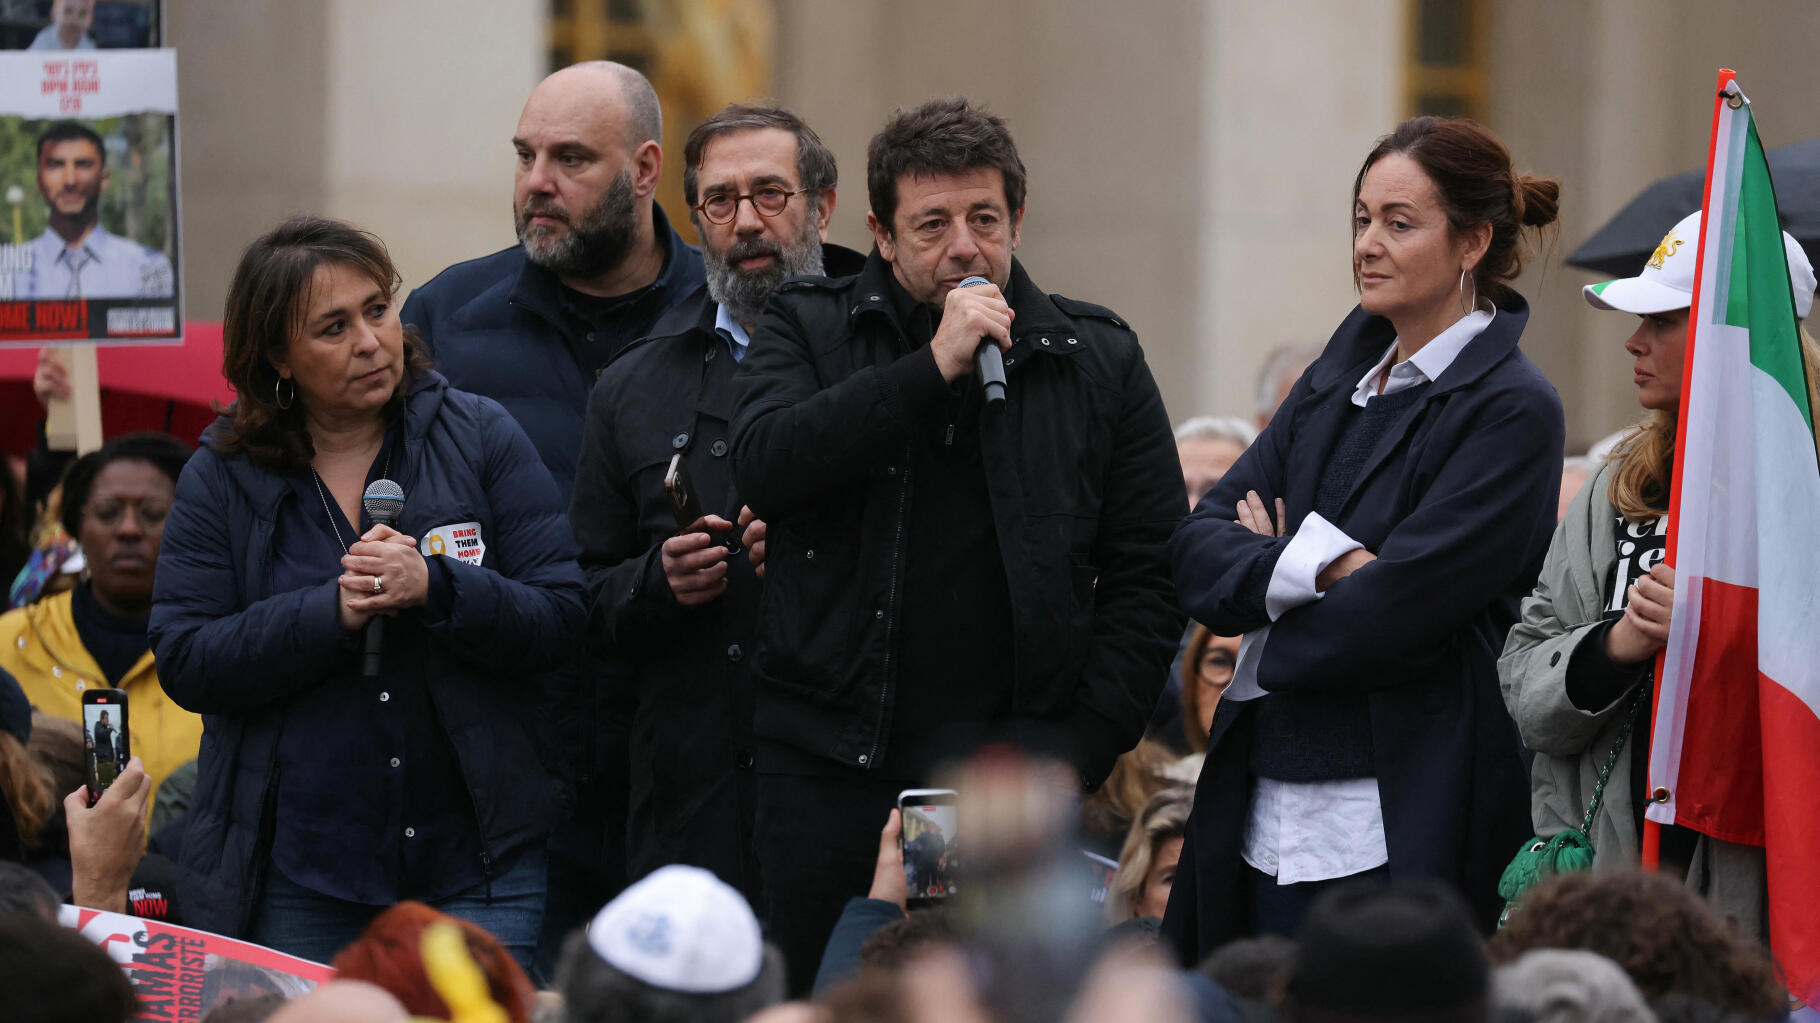 Patrick Bruel ed Enrico Macias alla manifestazione parigina per chiedere la liberazione degli ostaggi